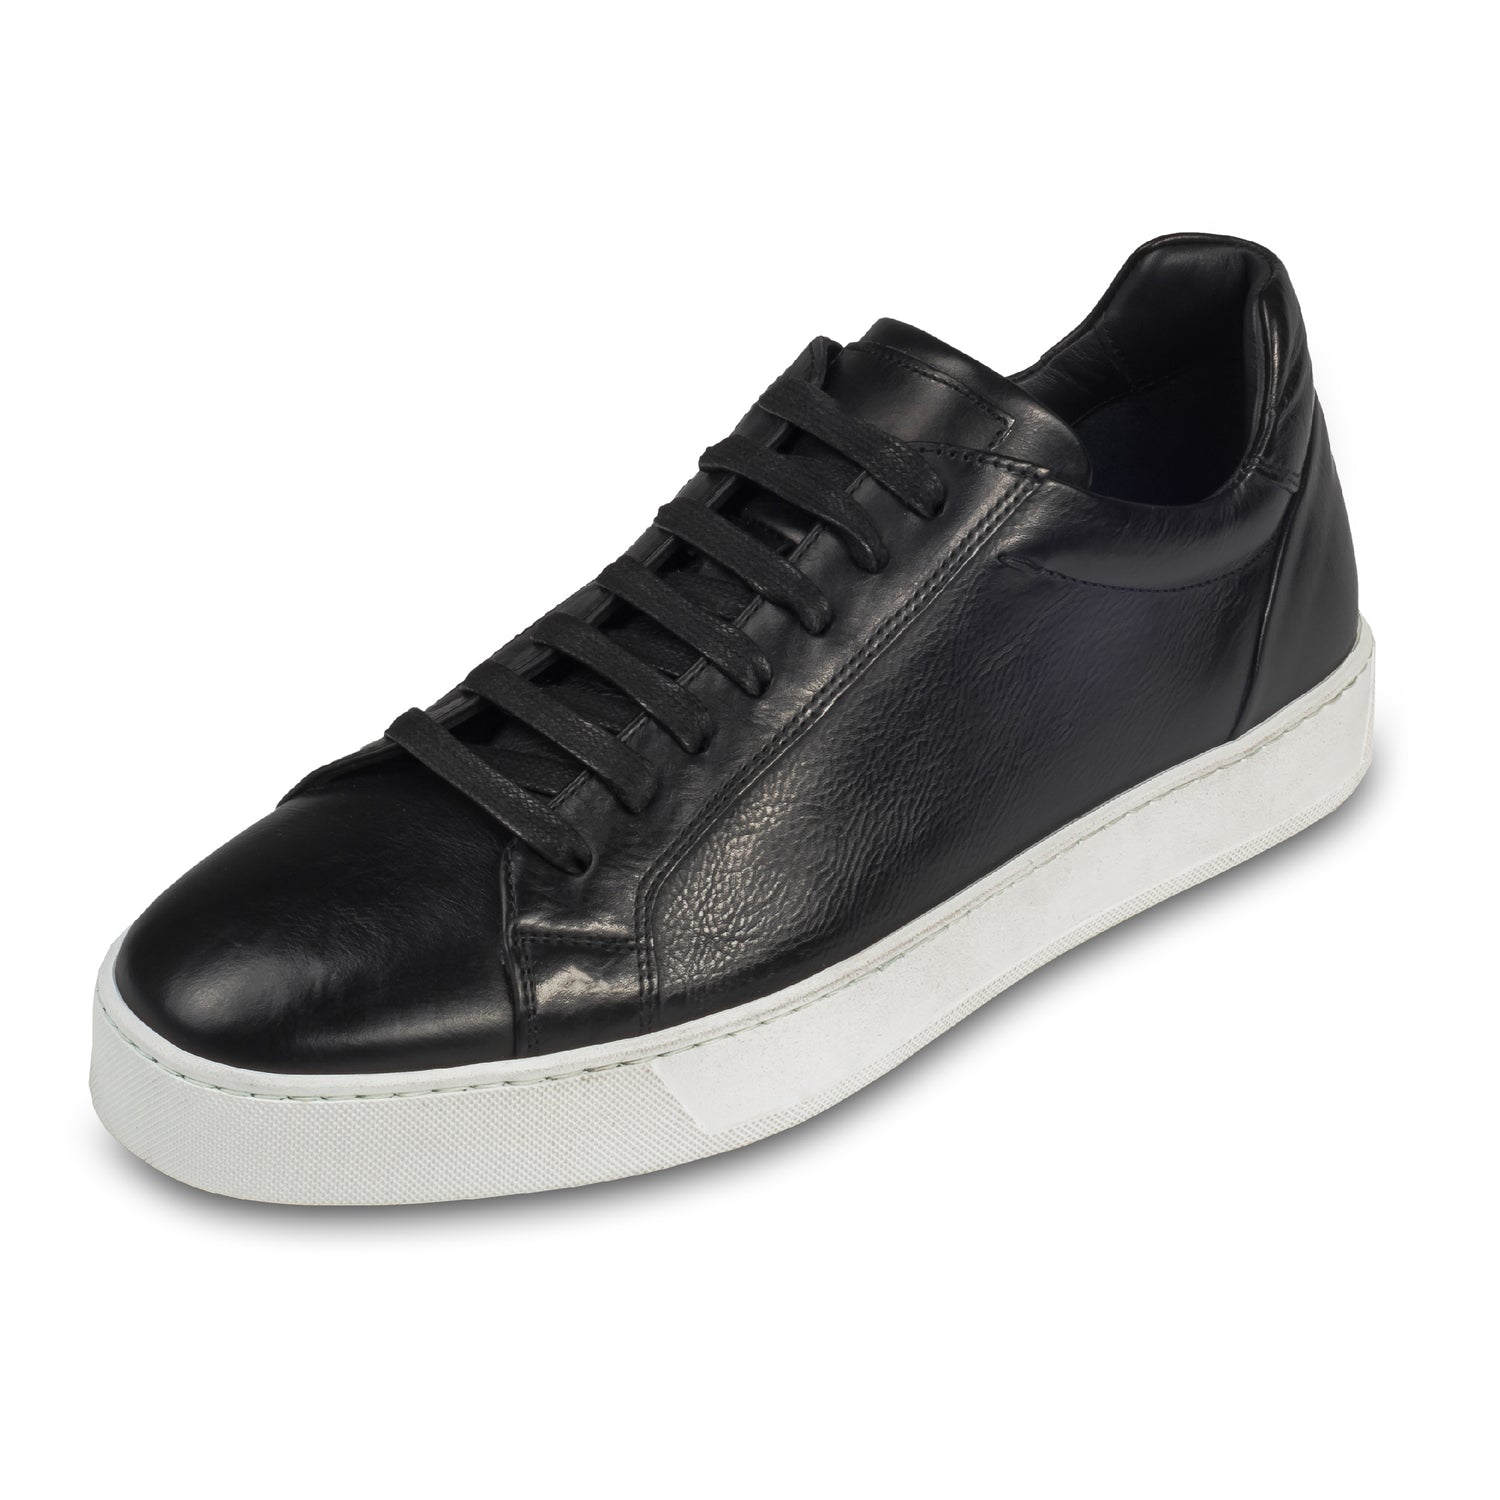 Triverflight – Italienische Herren-Sneaker in schwarz. Aus Kalbsleder handgefertigt. Schräge Ansicht linker Schuh.